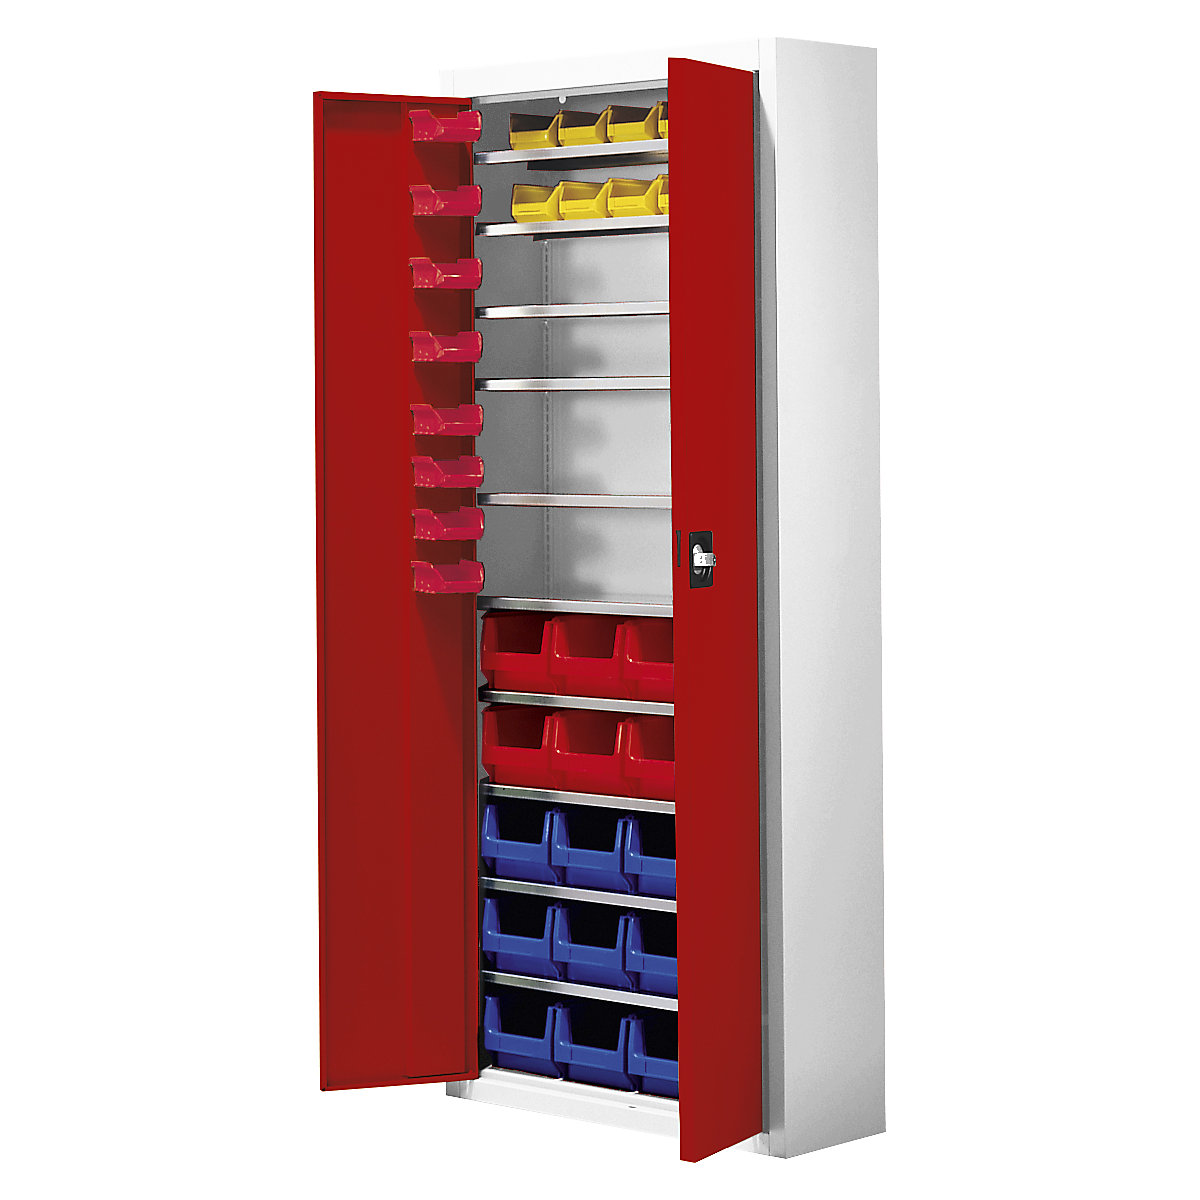 Skladišni ormar s otvorenim skladišnim kutijama – mauser, VxŠxD 1740 x 680 x 280 mm, 48 kutija, u dvije boje, korpus u sivoj boji, vrata u crvenoj boji, od 3 kom.-3